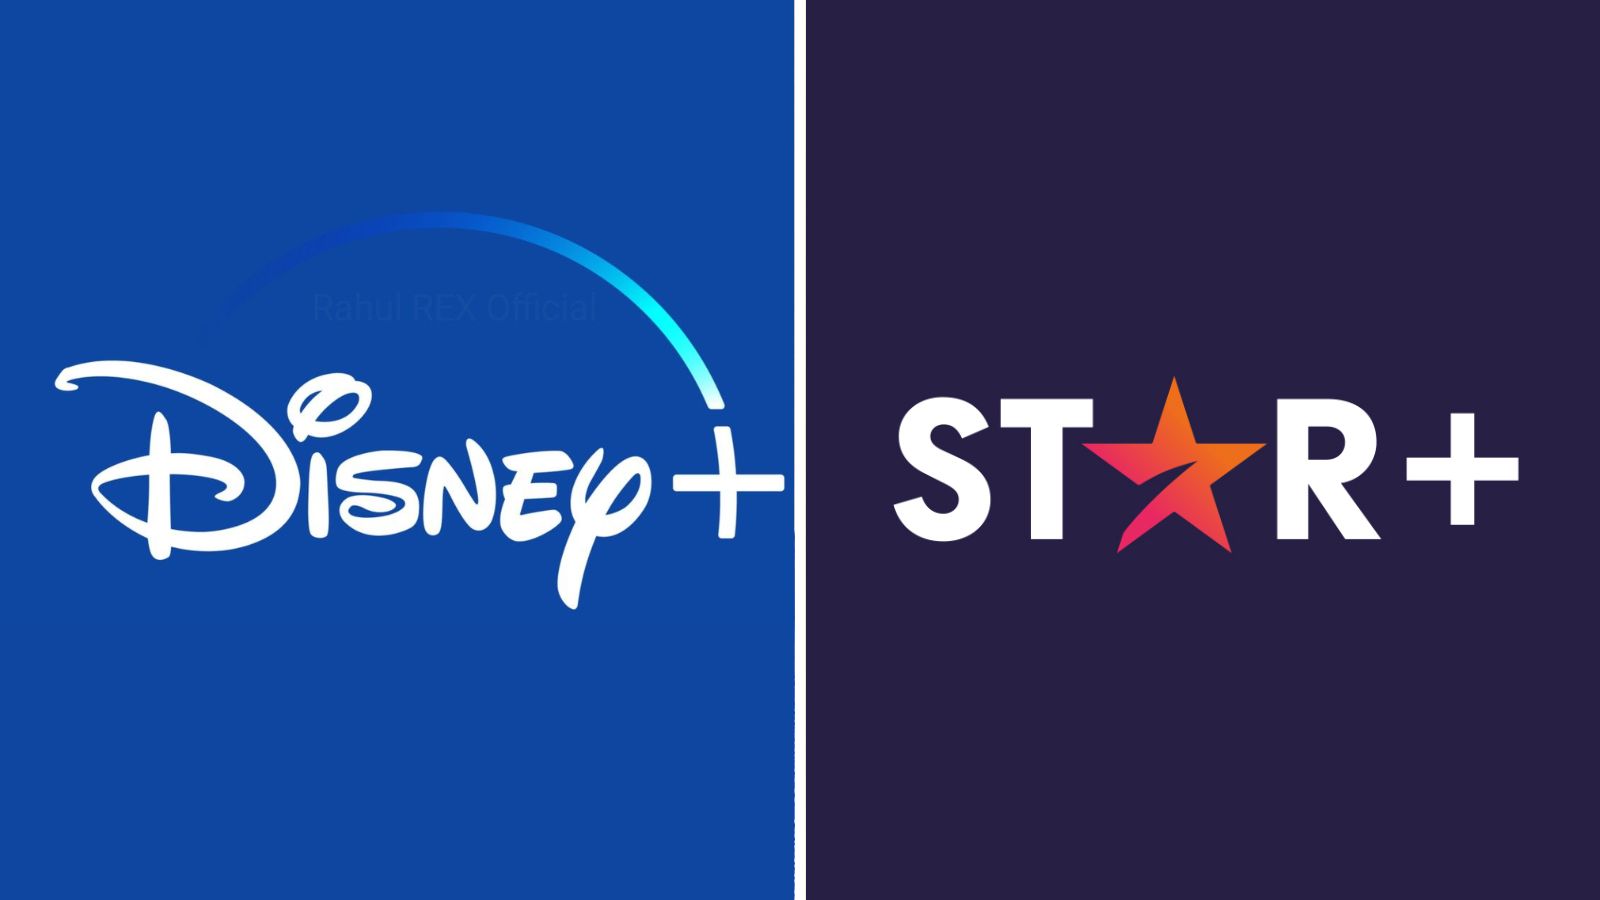 Es oficial, Star Plus se fusionará con Disney Plus